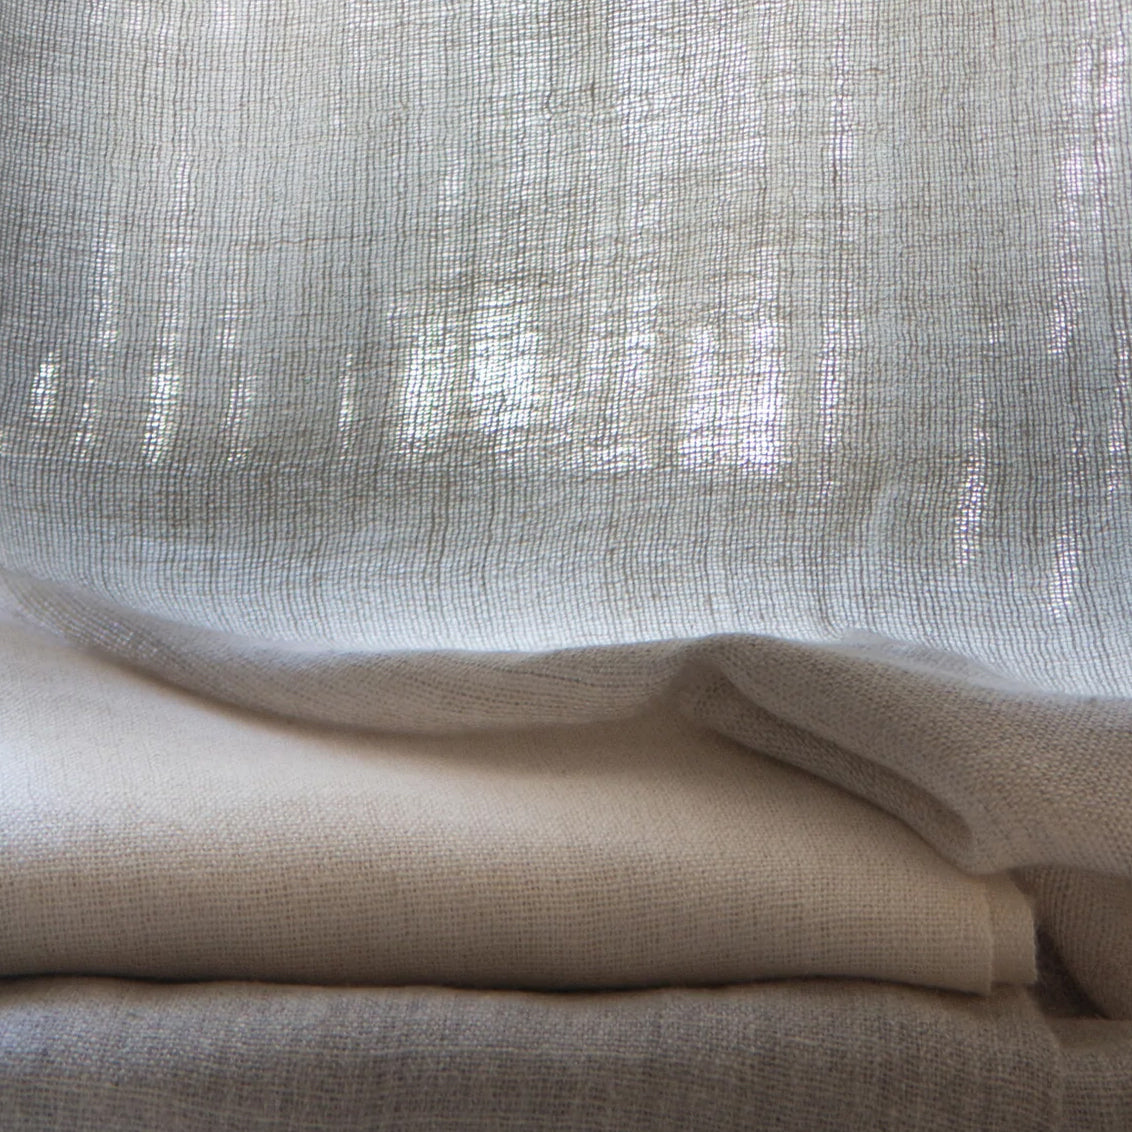 Alpaca Linen Sheer Fabric - Rosemary Hallgarten